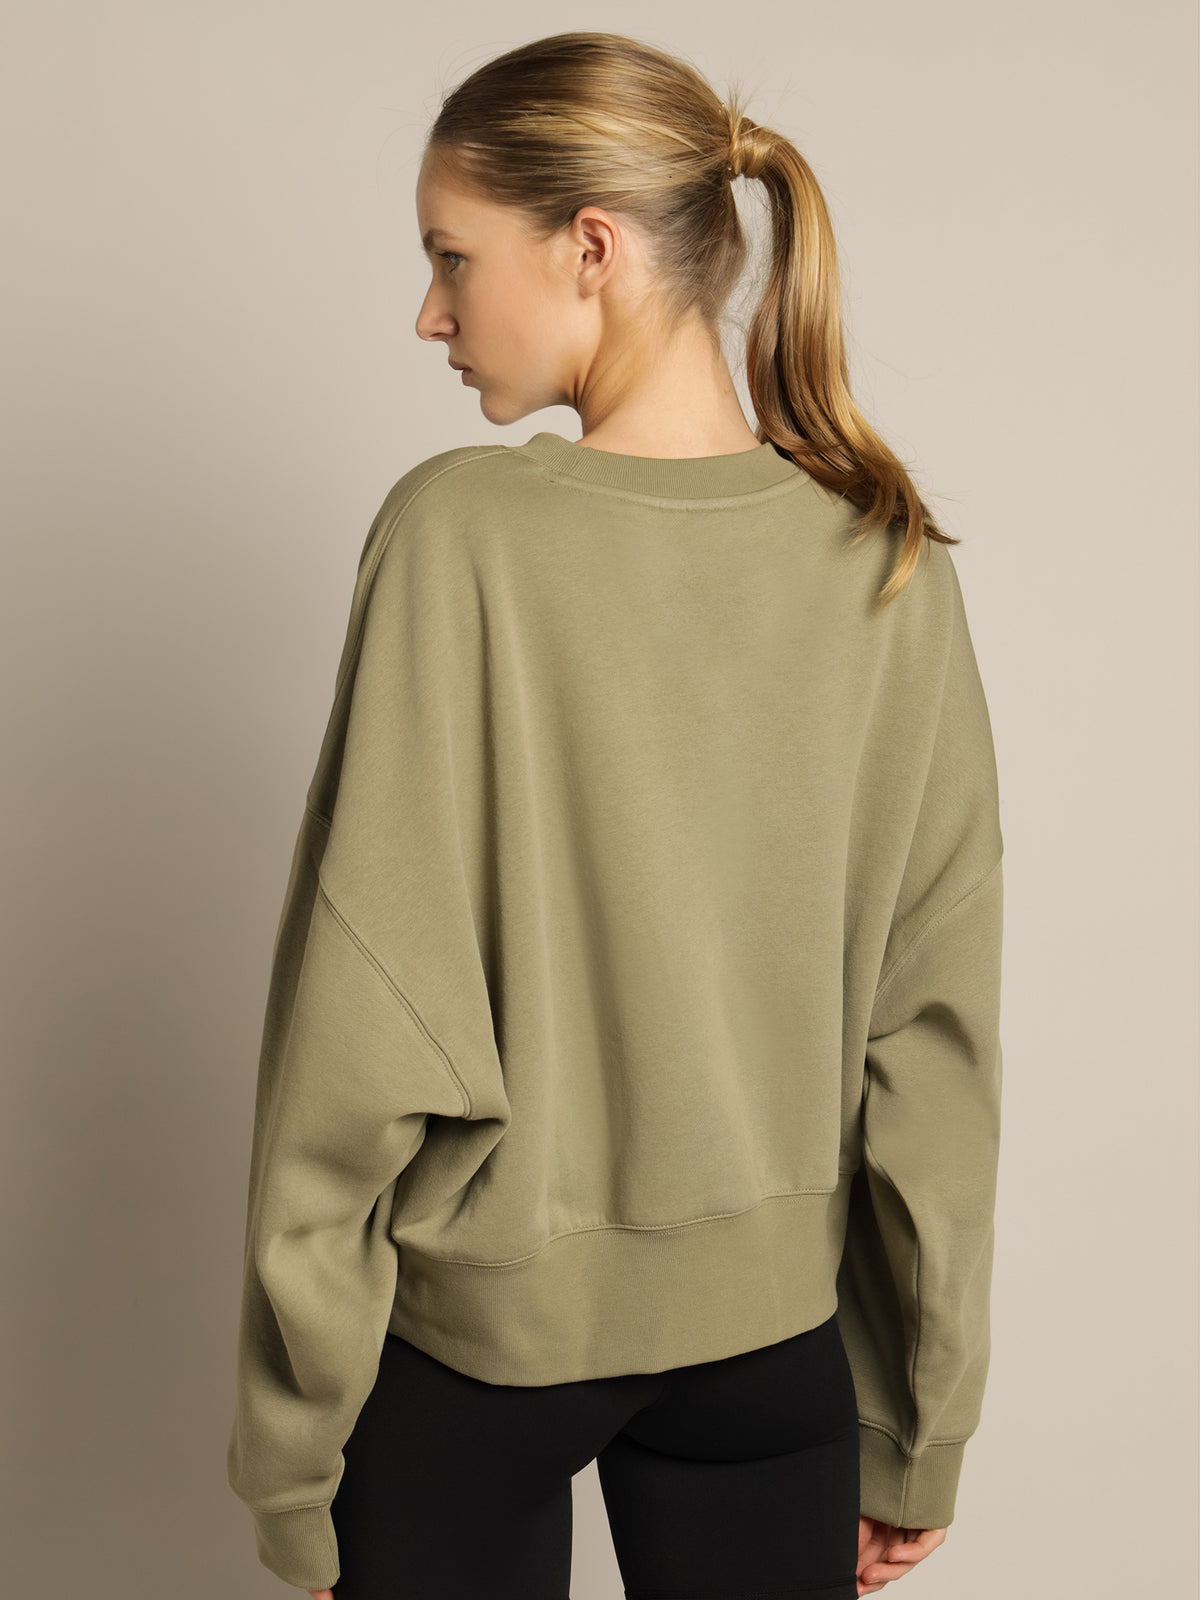 Originals Essentials Fleece Sweatshirt in Orbit Green